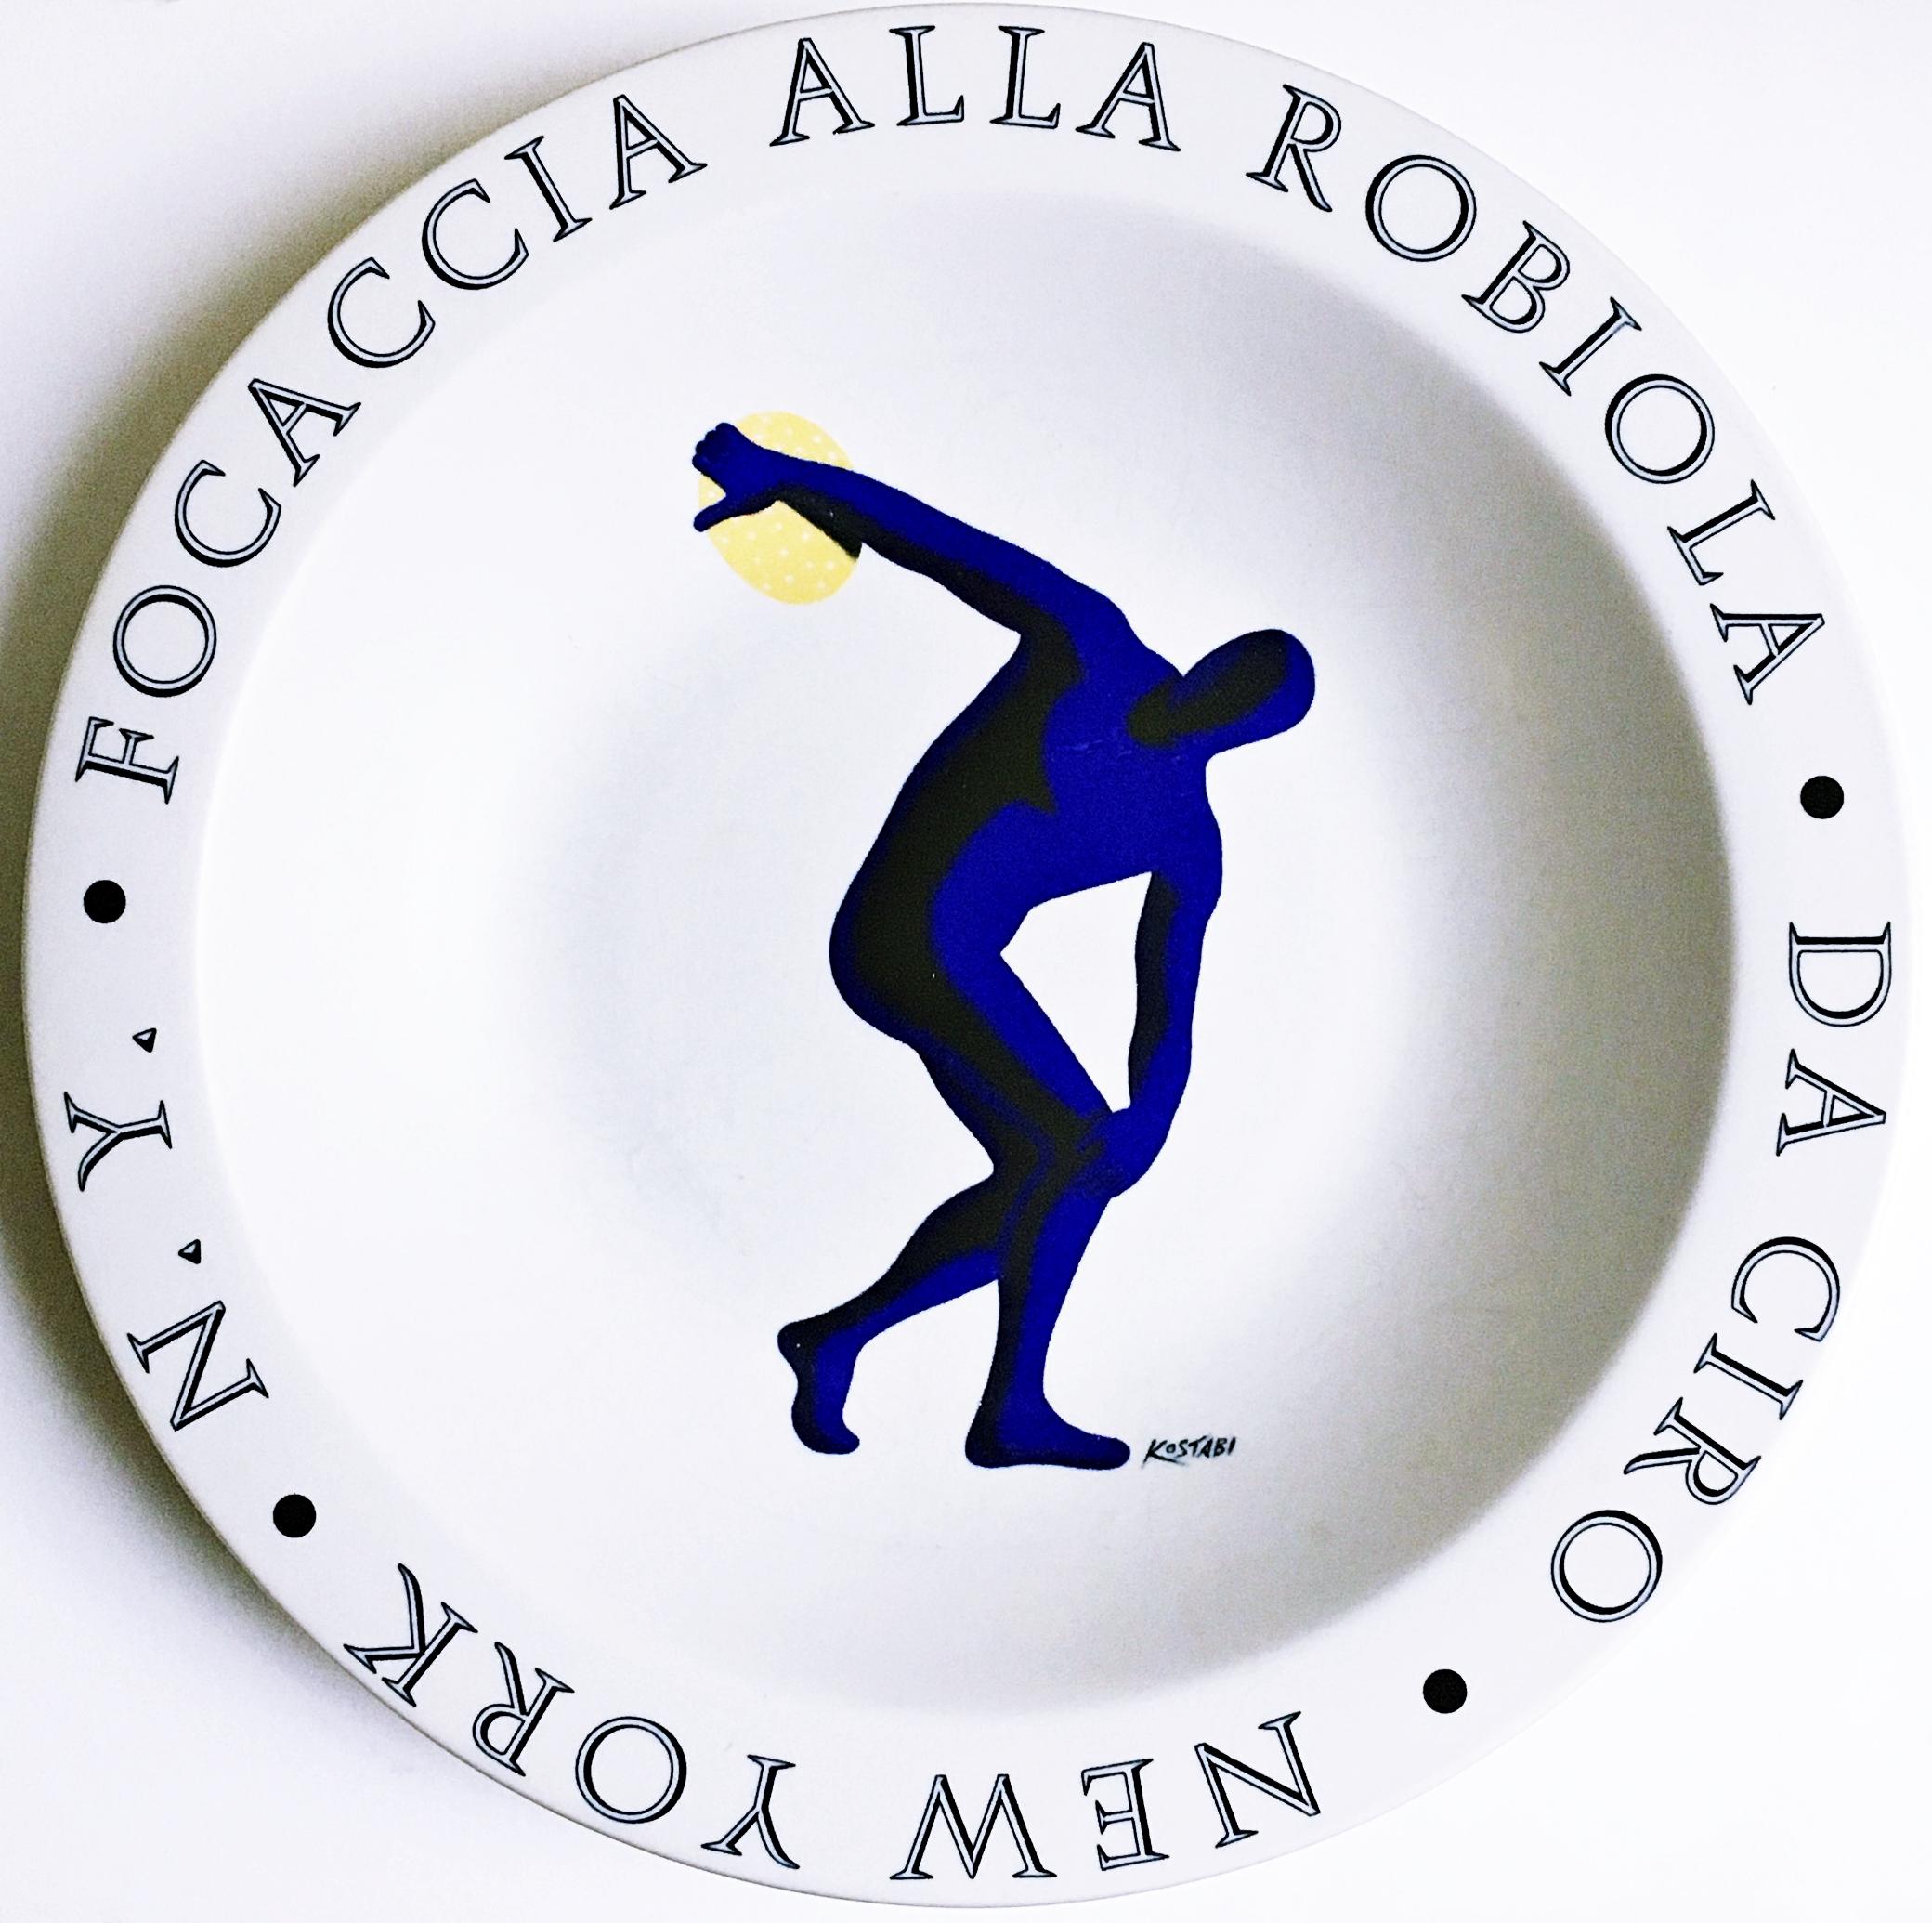 Focaccia Alla Robiola - Da Ciro - New York, NY - Print de Mark Kostabi